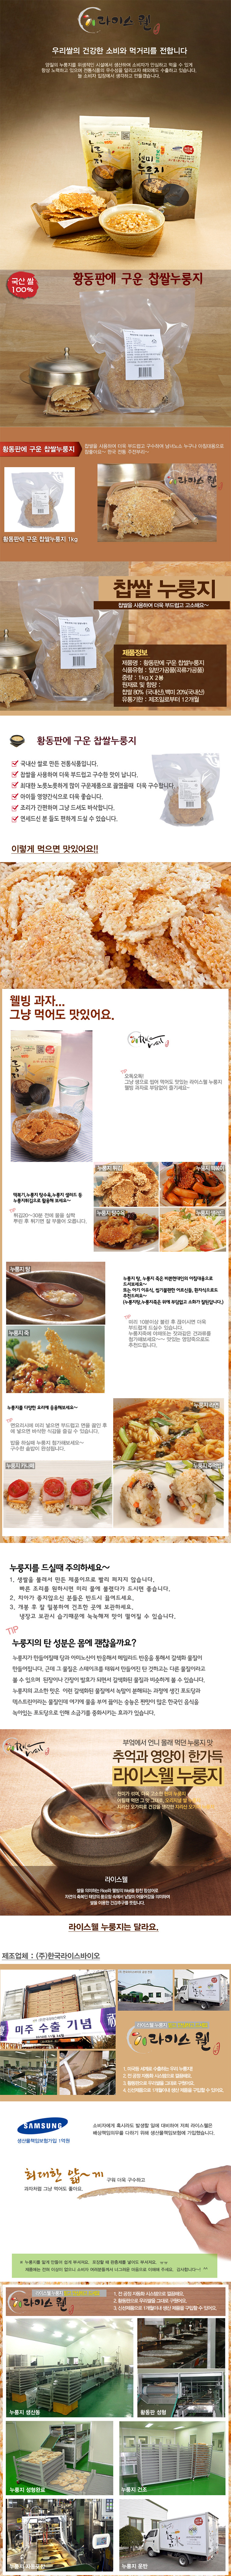 [ pungsung ] 100 % 韓國烤焦了黏米 1 公斤 * 2 pcs